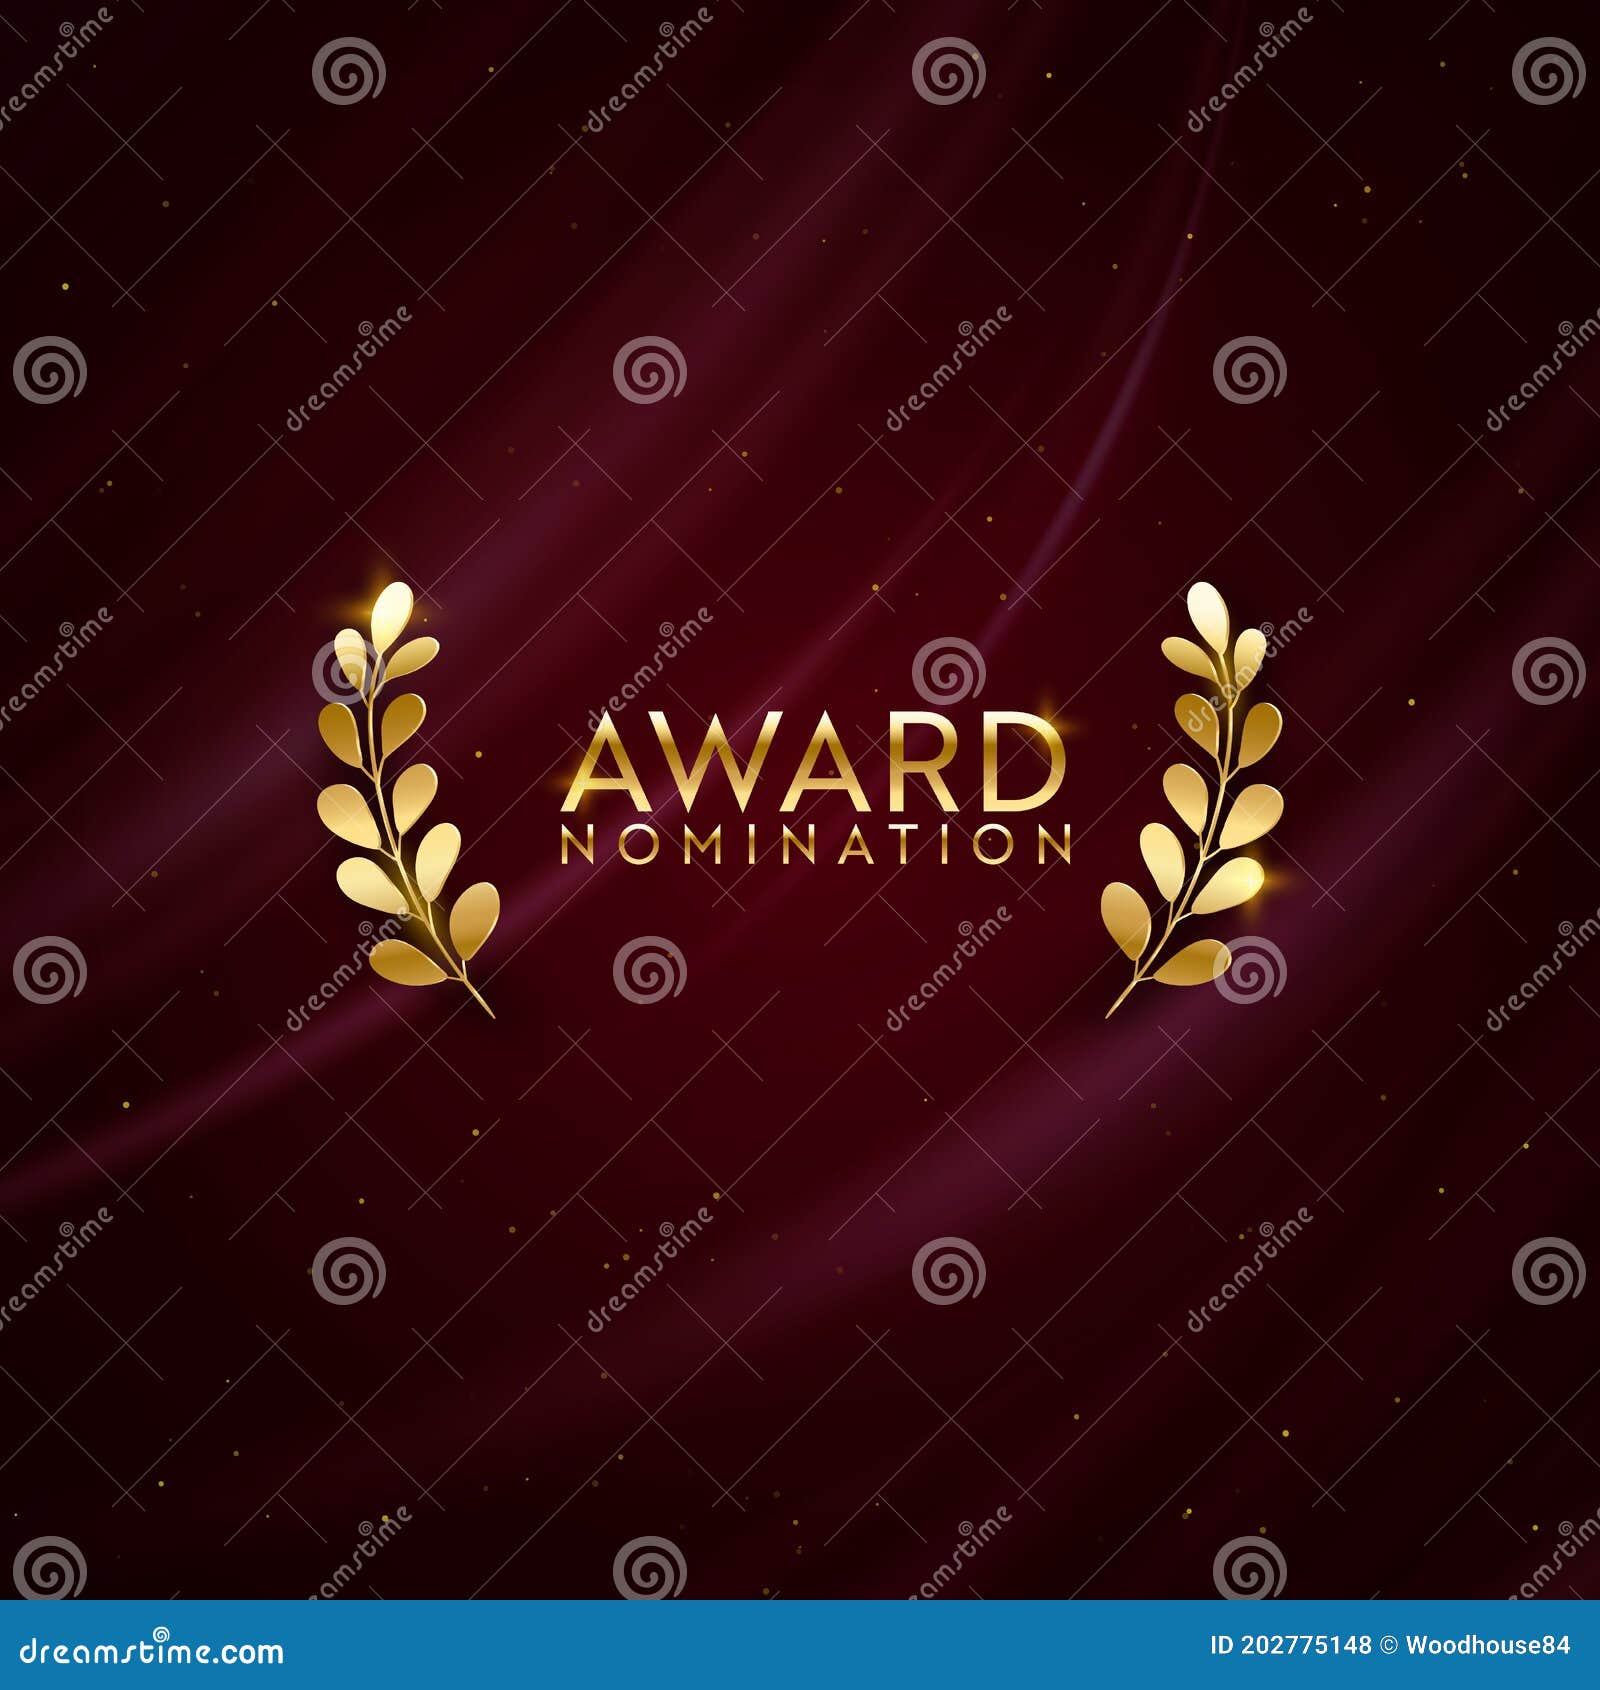 golden winner sparkle banner with laurel wreath. award nomination  background